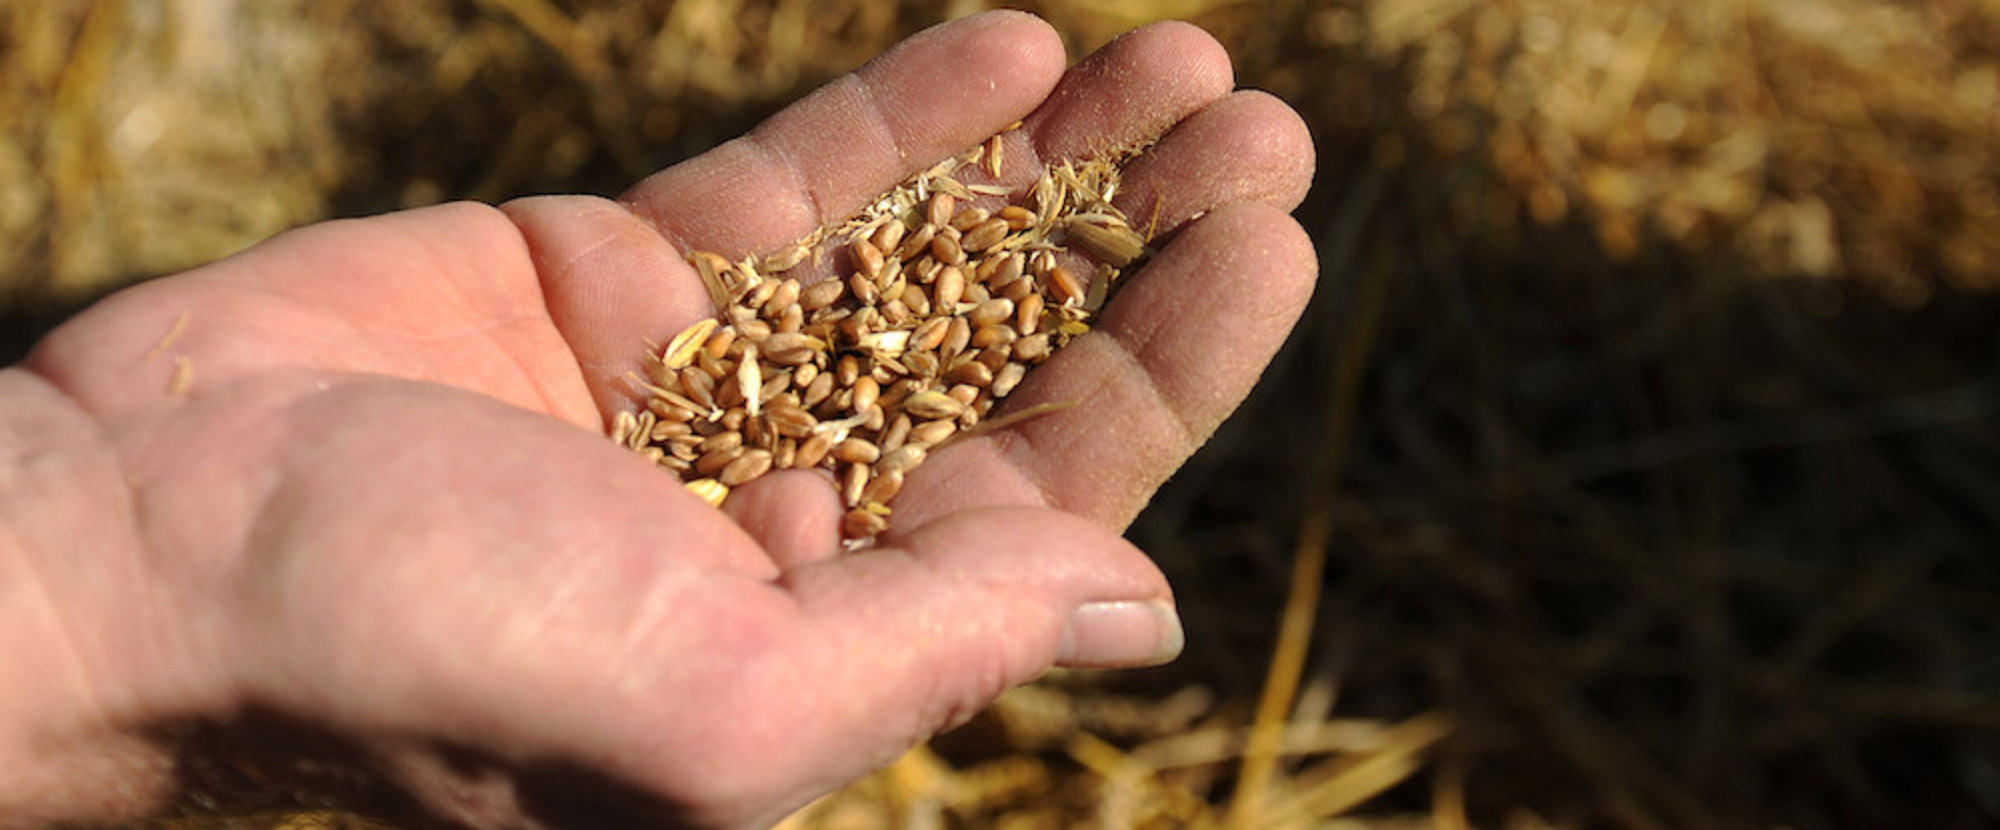 Ein Bauer hält in seiner Hand Getreidesamen, die er geerntet hat. Im Hintergrund ist gedroschener Stroh zu sehen. Dieses Bild ist Teil des Features 'Erntedank'.